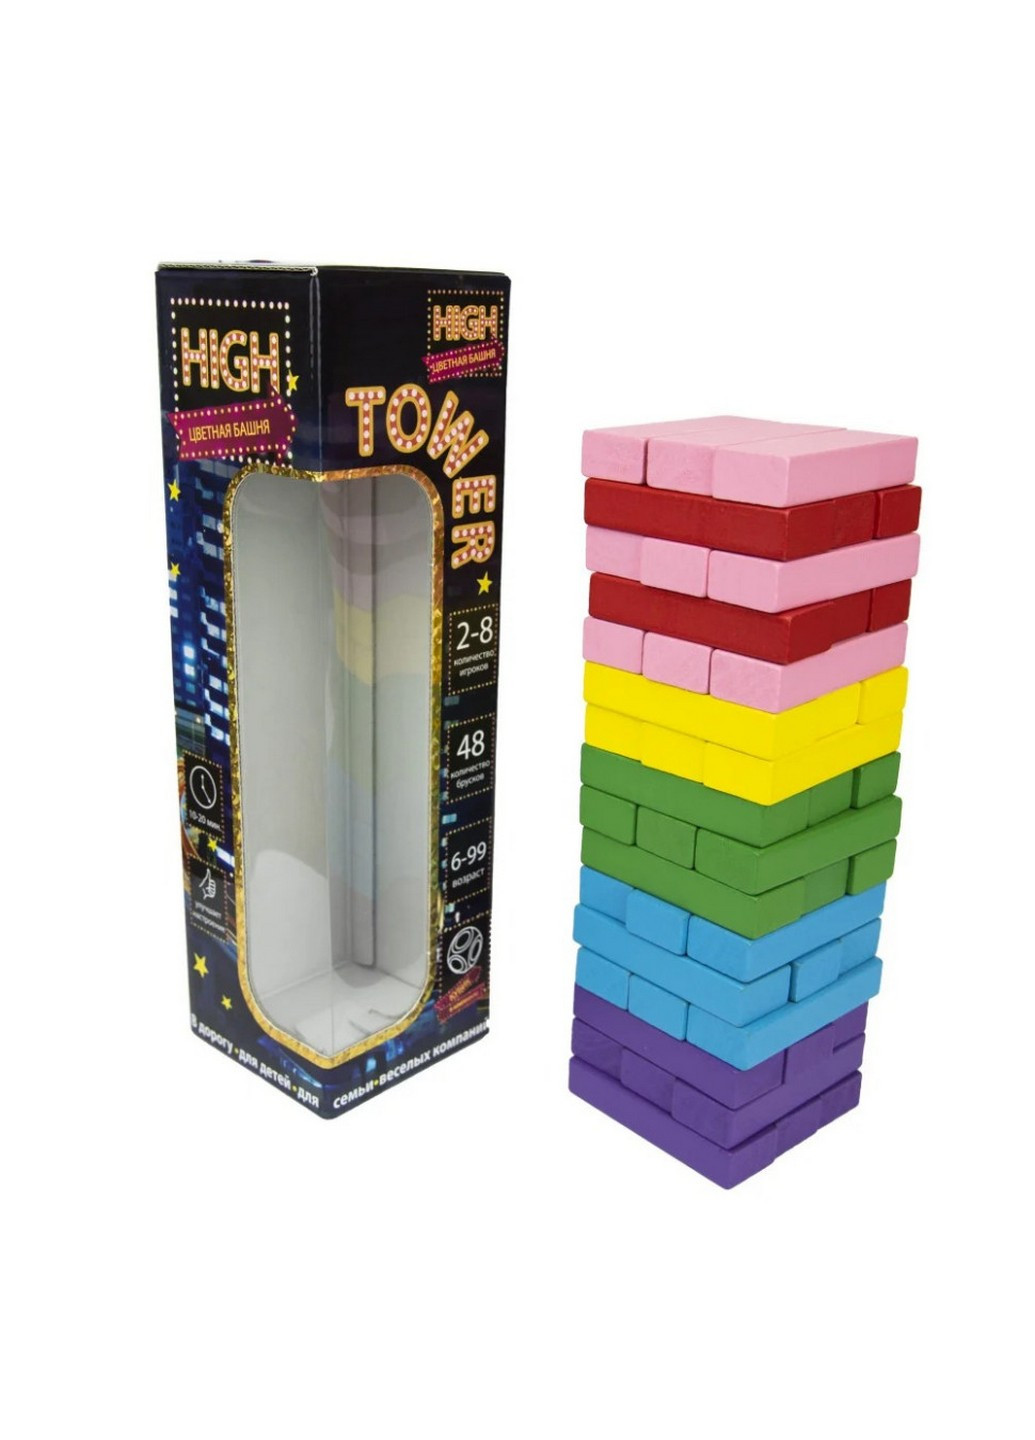 Розважальна гра "High Tower" Дженга рус 28х8,2х8,2 см Strateg (259245422)